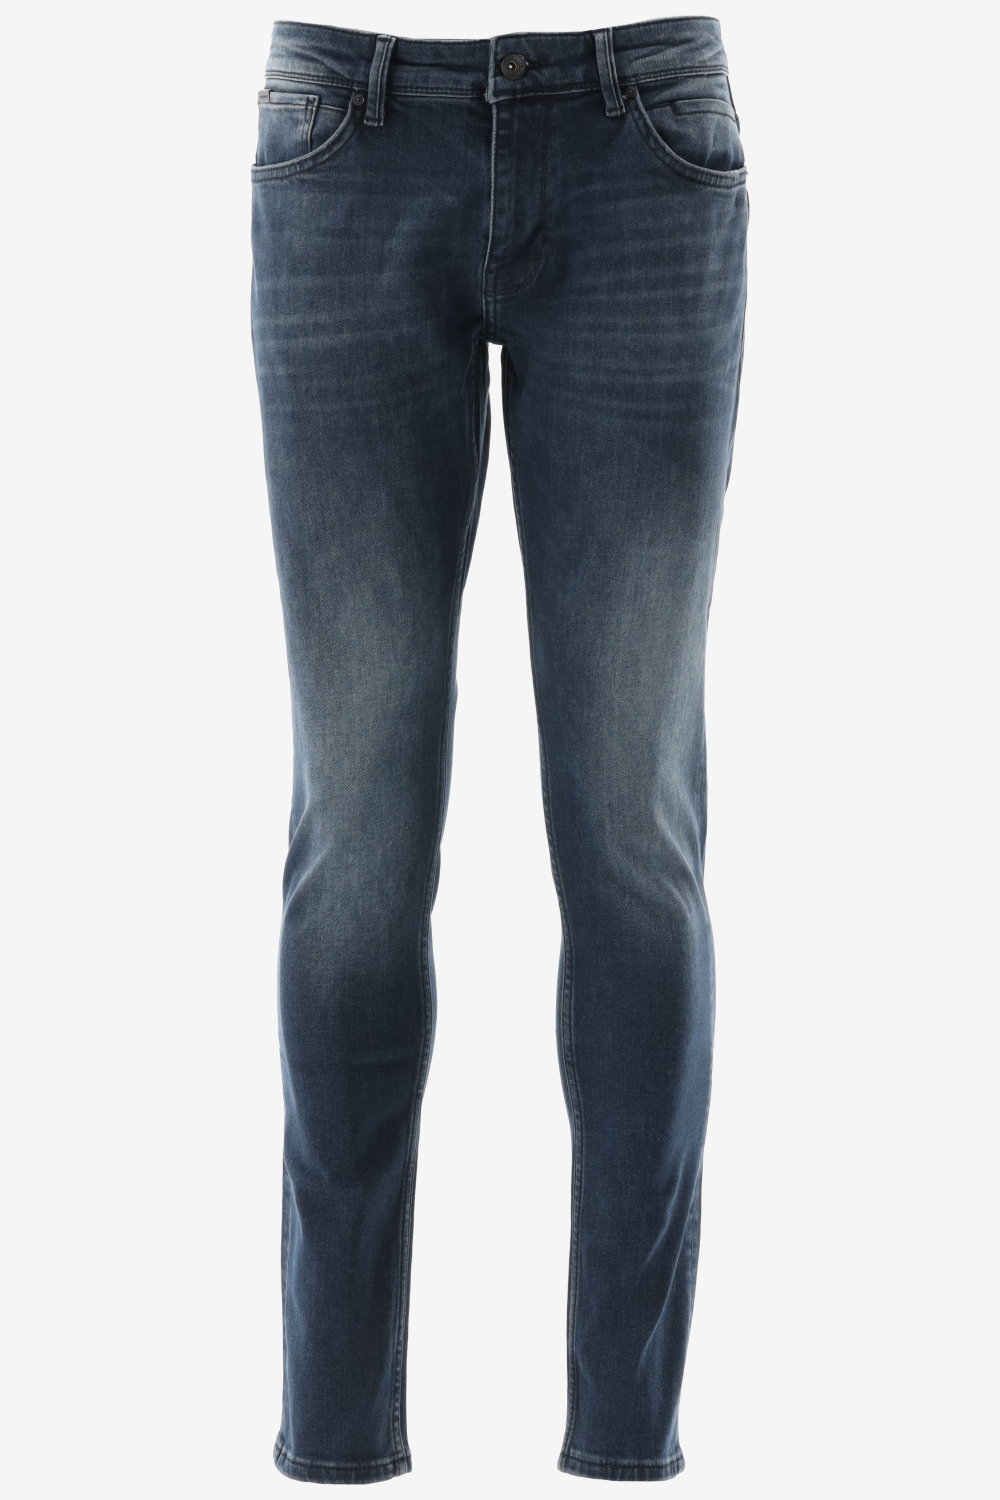 Purewhite - Jone Skinny Fit Heren Skinny Fit Jeans - Blauw - Maat 29